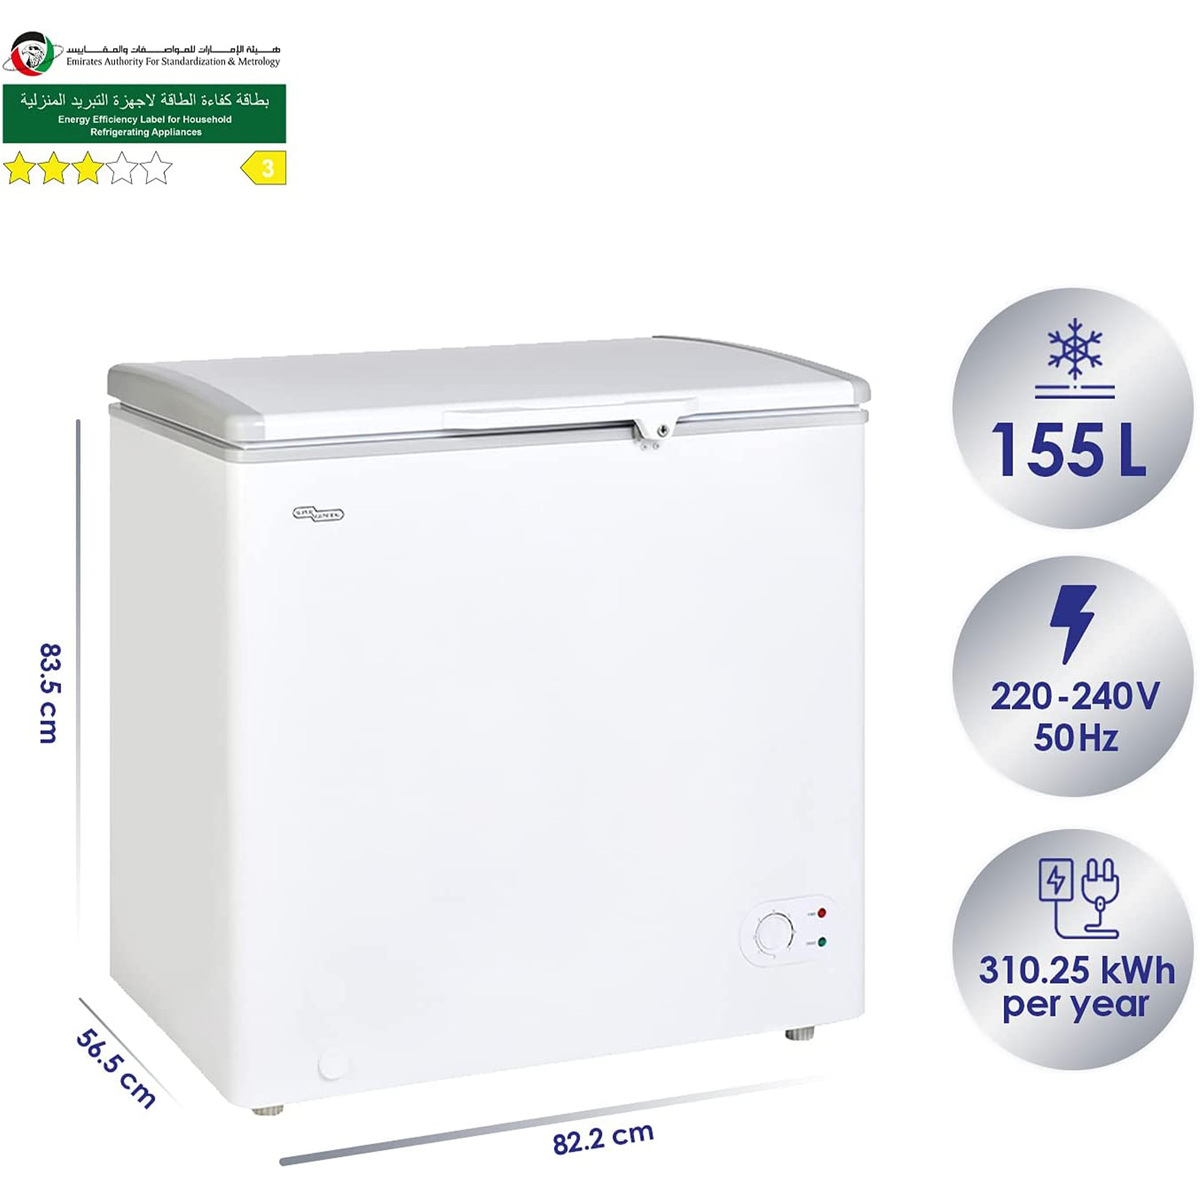 Super General Chest Freezer, 200L, White, SGF222